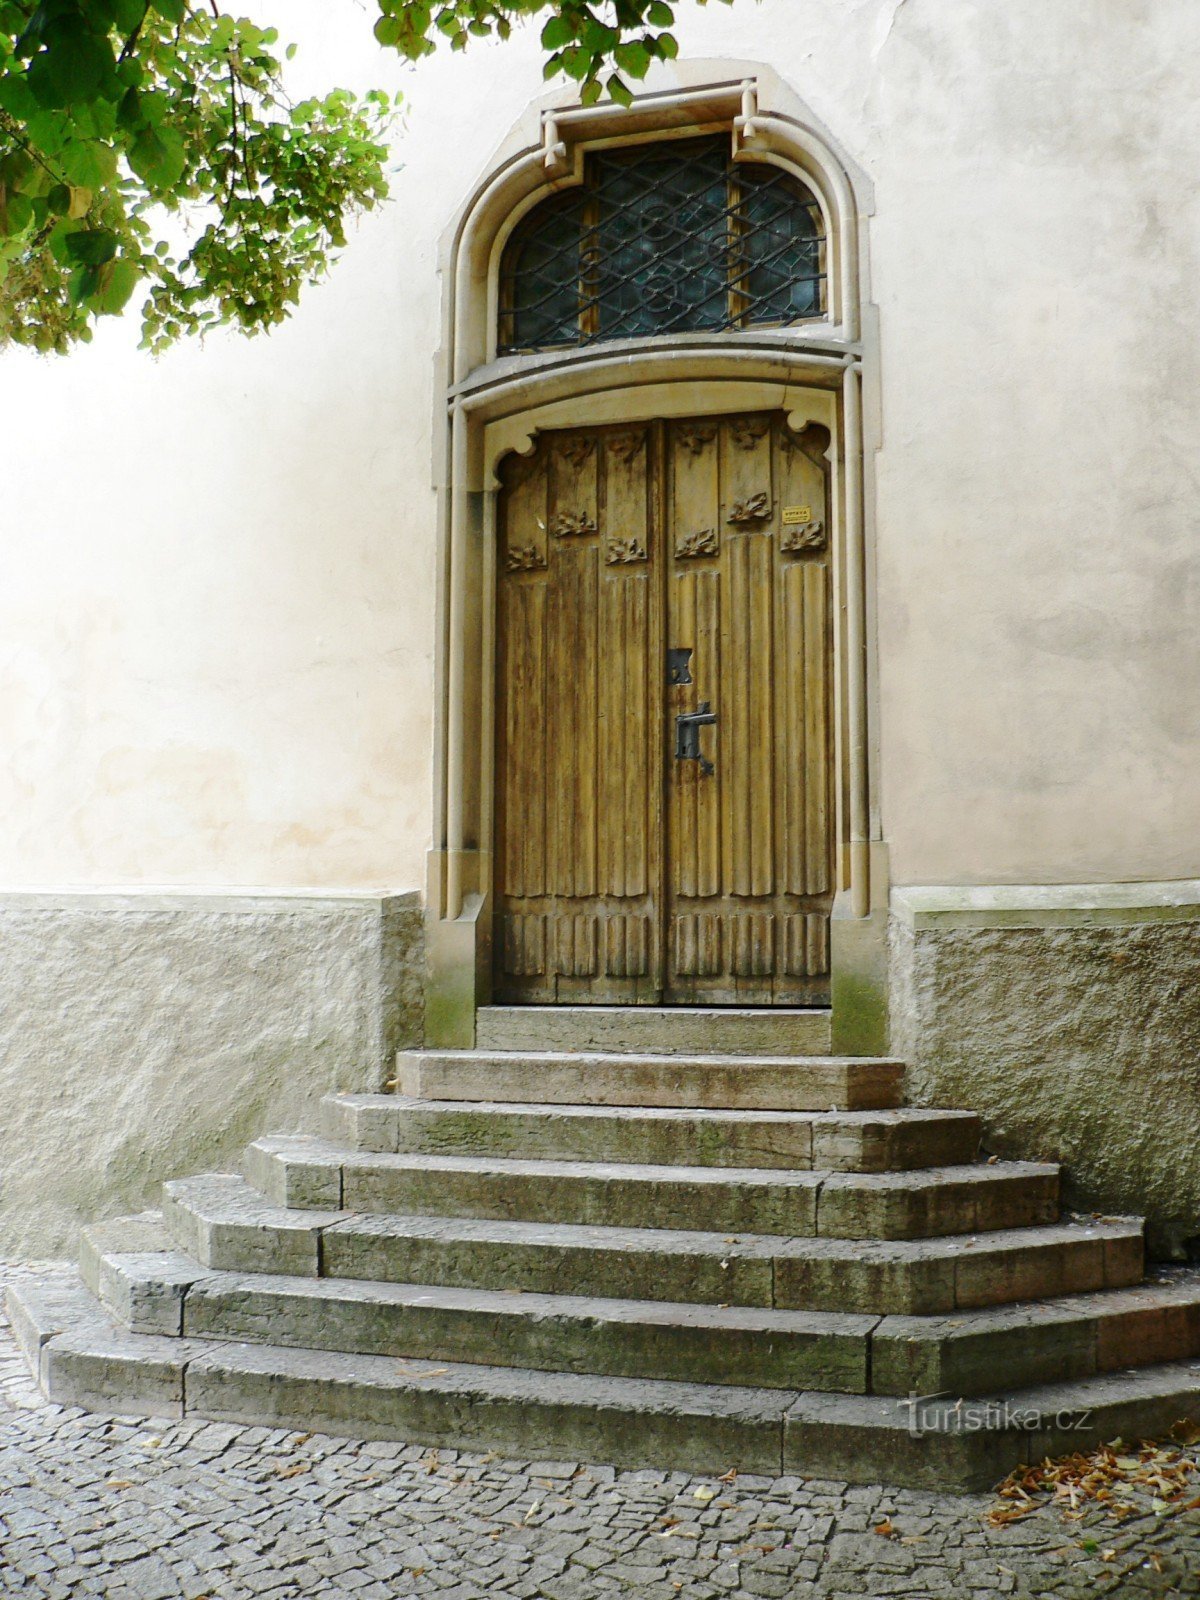 sisäänkäynti kirkon sakristiin, joka avattiin vasta vuoden 1901 jälkeen